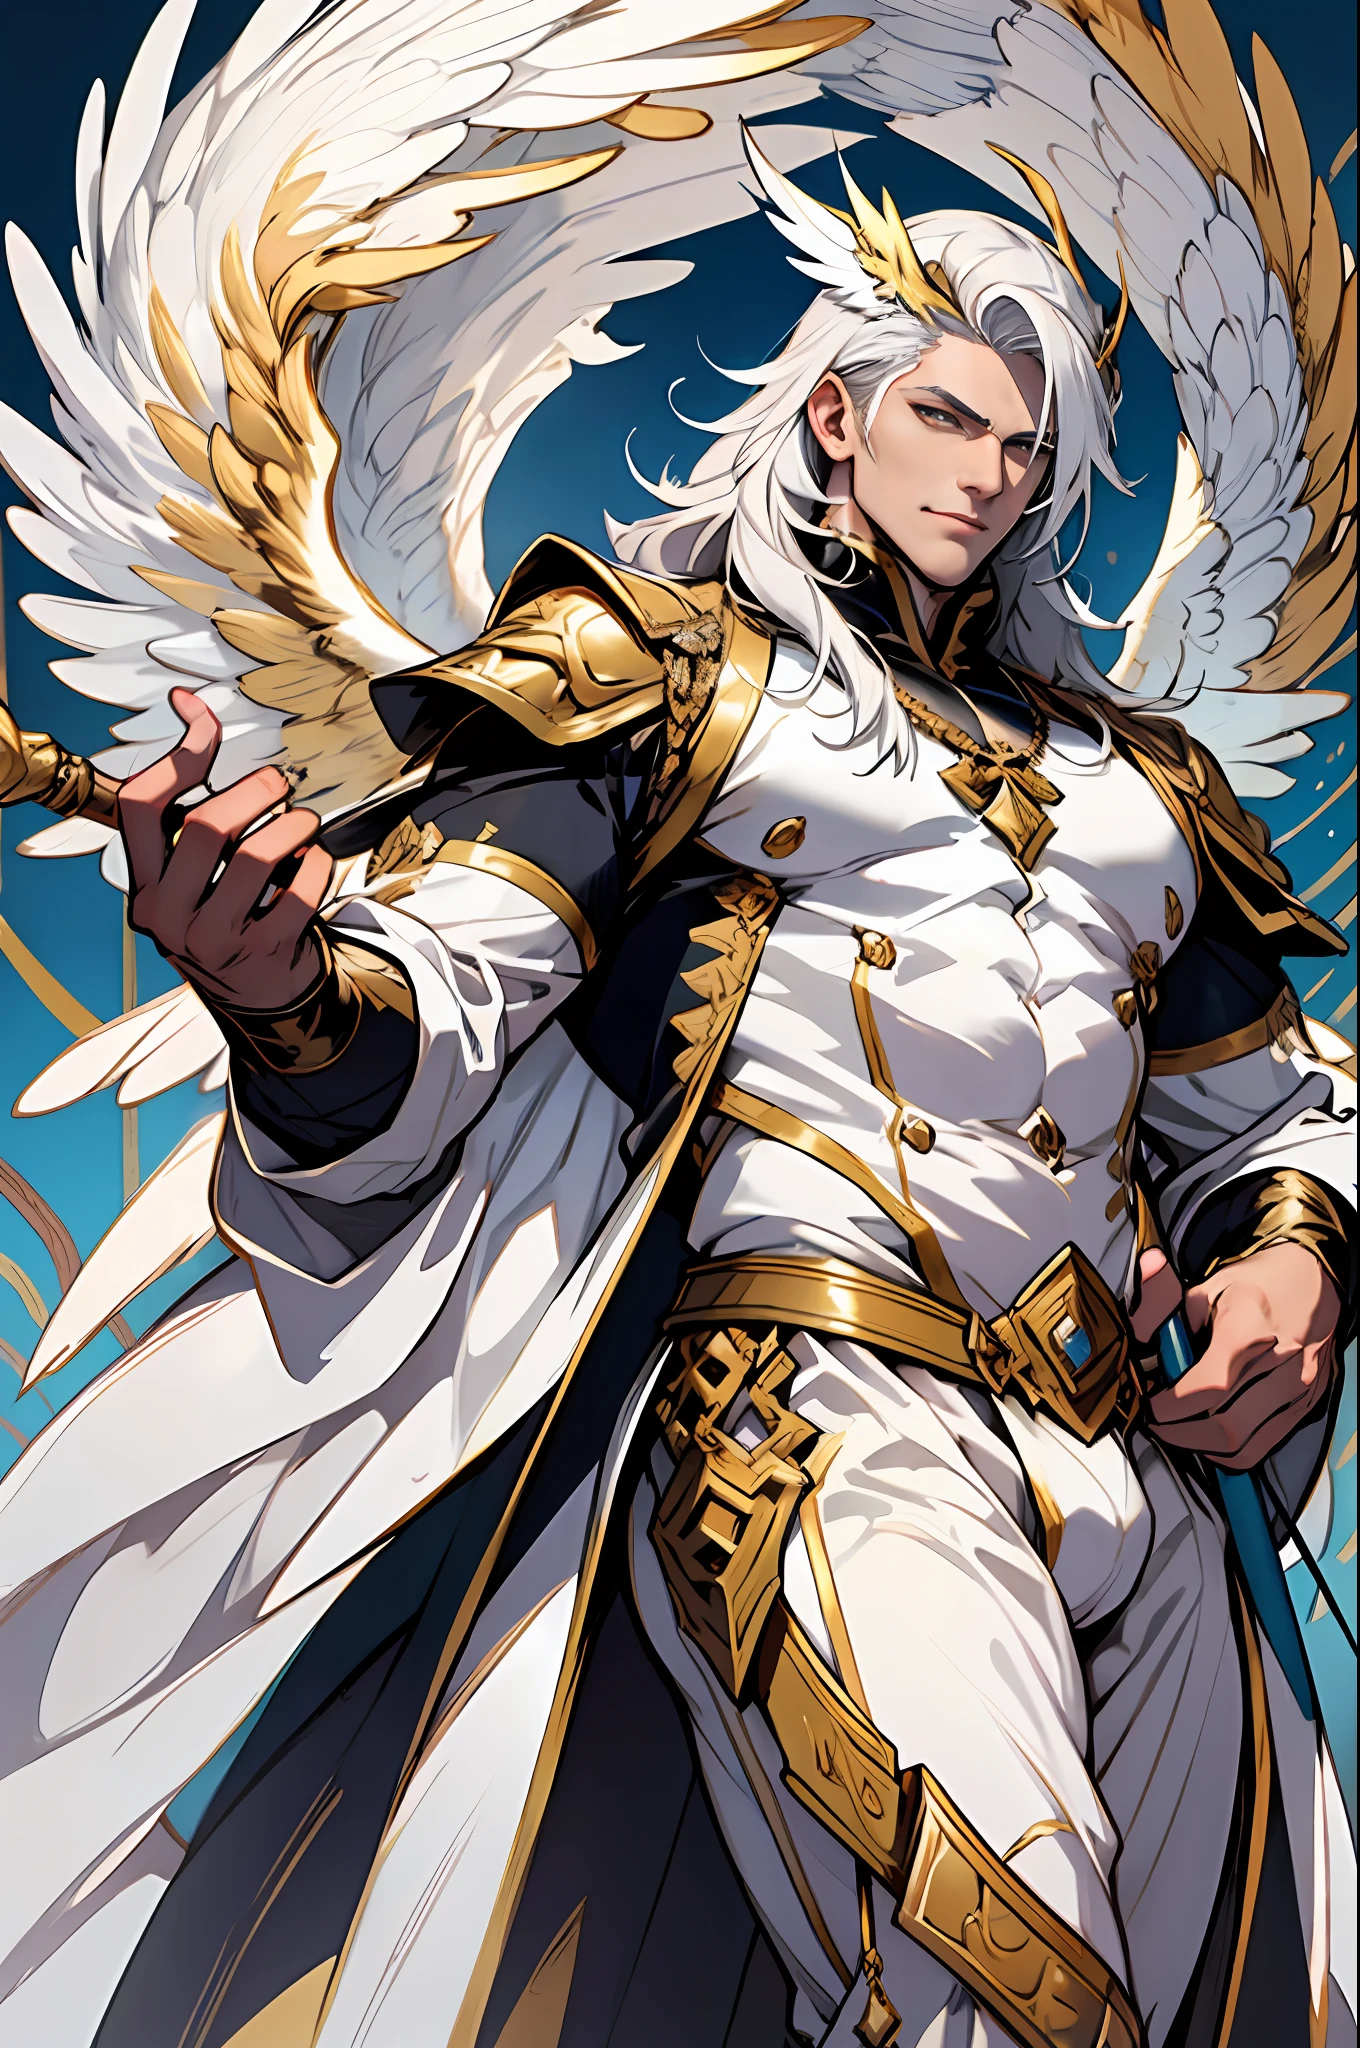 Caius 是一个英俊的男性, 身高7英尺. 他拥有运动员般的体格. 他穿着银色和金色的皇室服装. 他有一头美丽的白色丝质头发和金色的. 他手持一根棍子. 他有巨大的白色翅膀. 裤子鼓了一大块. 白凤人形